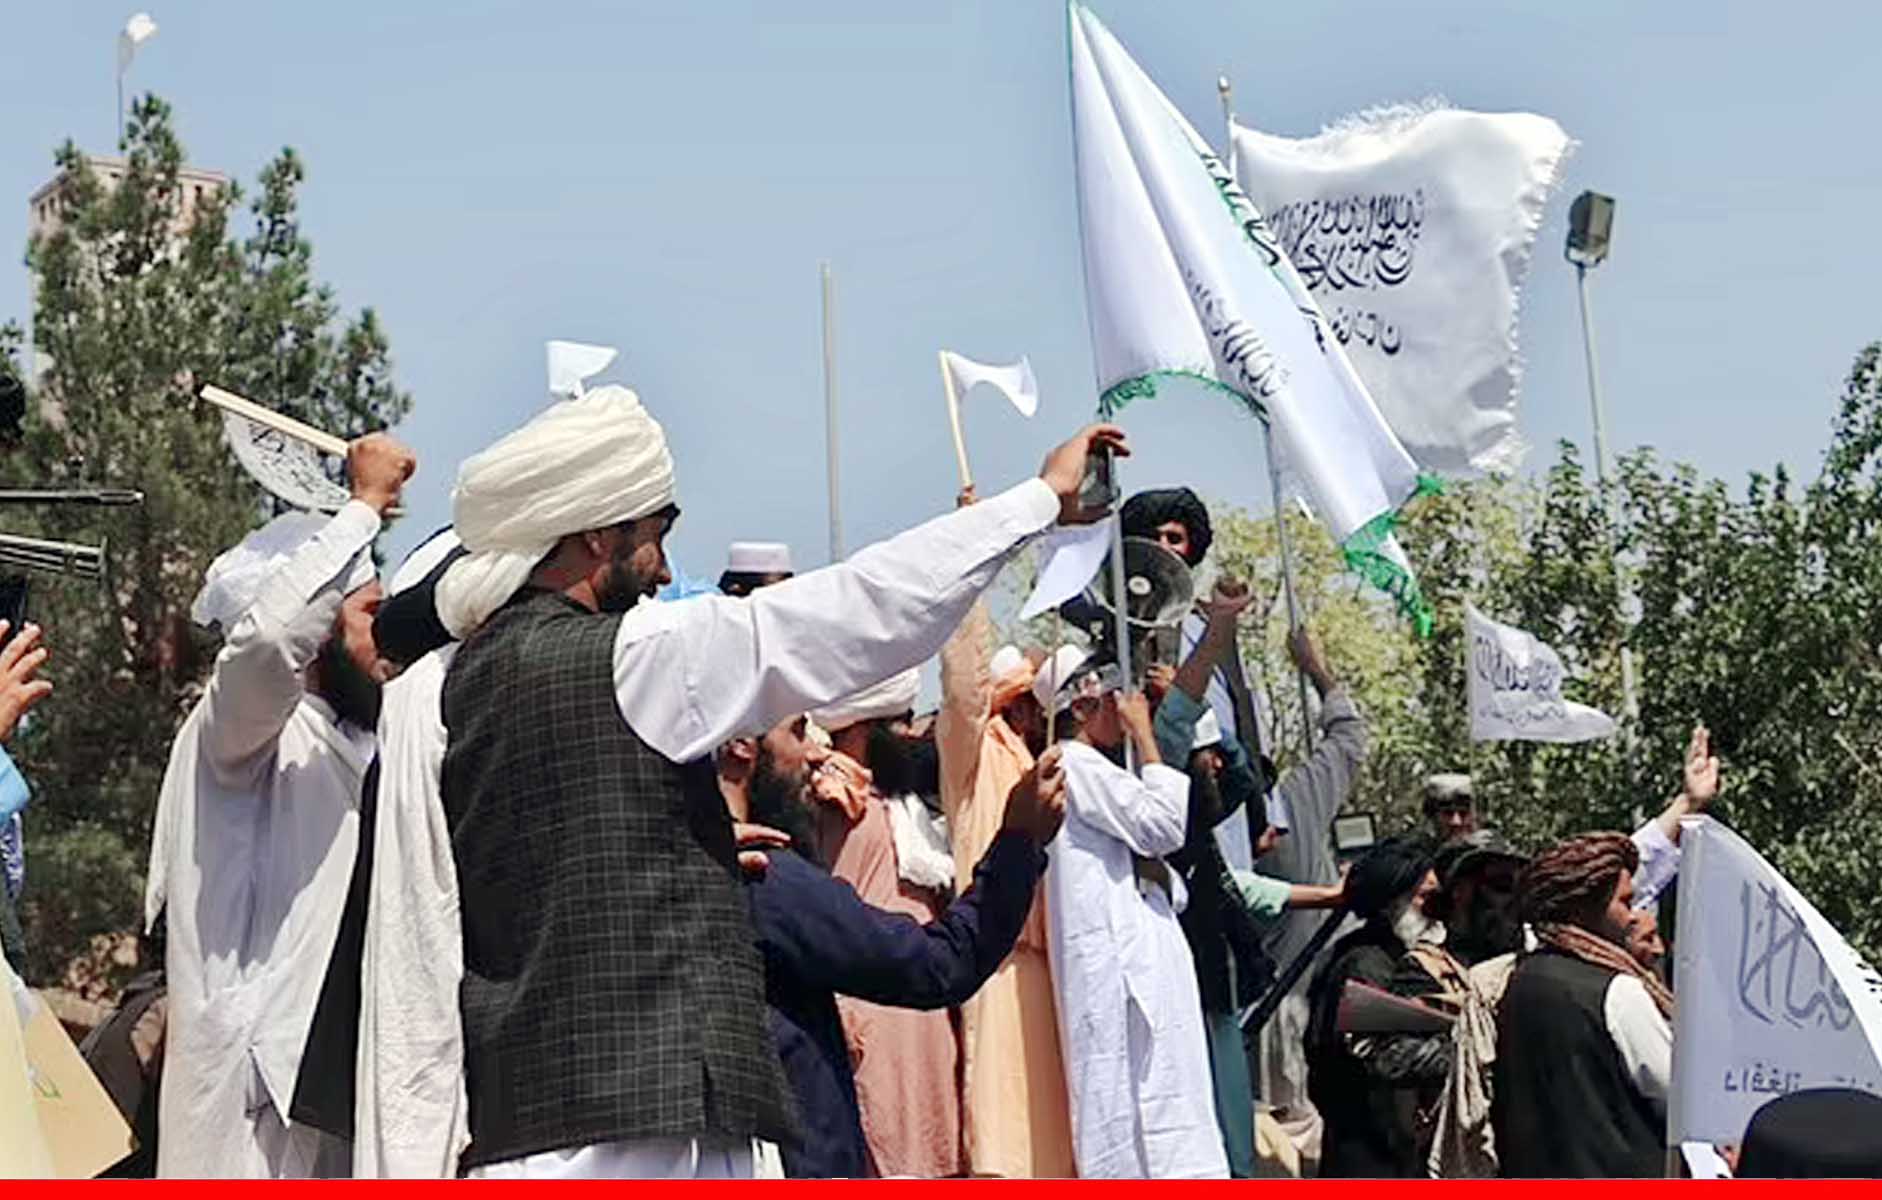 बधाई संदेश में अलकायदा ने तालिबान को दी बधाई, कश्मीर को मुक्त कराने का किया आह्वान